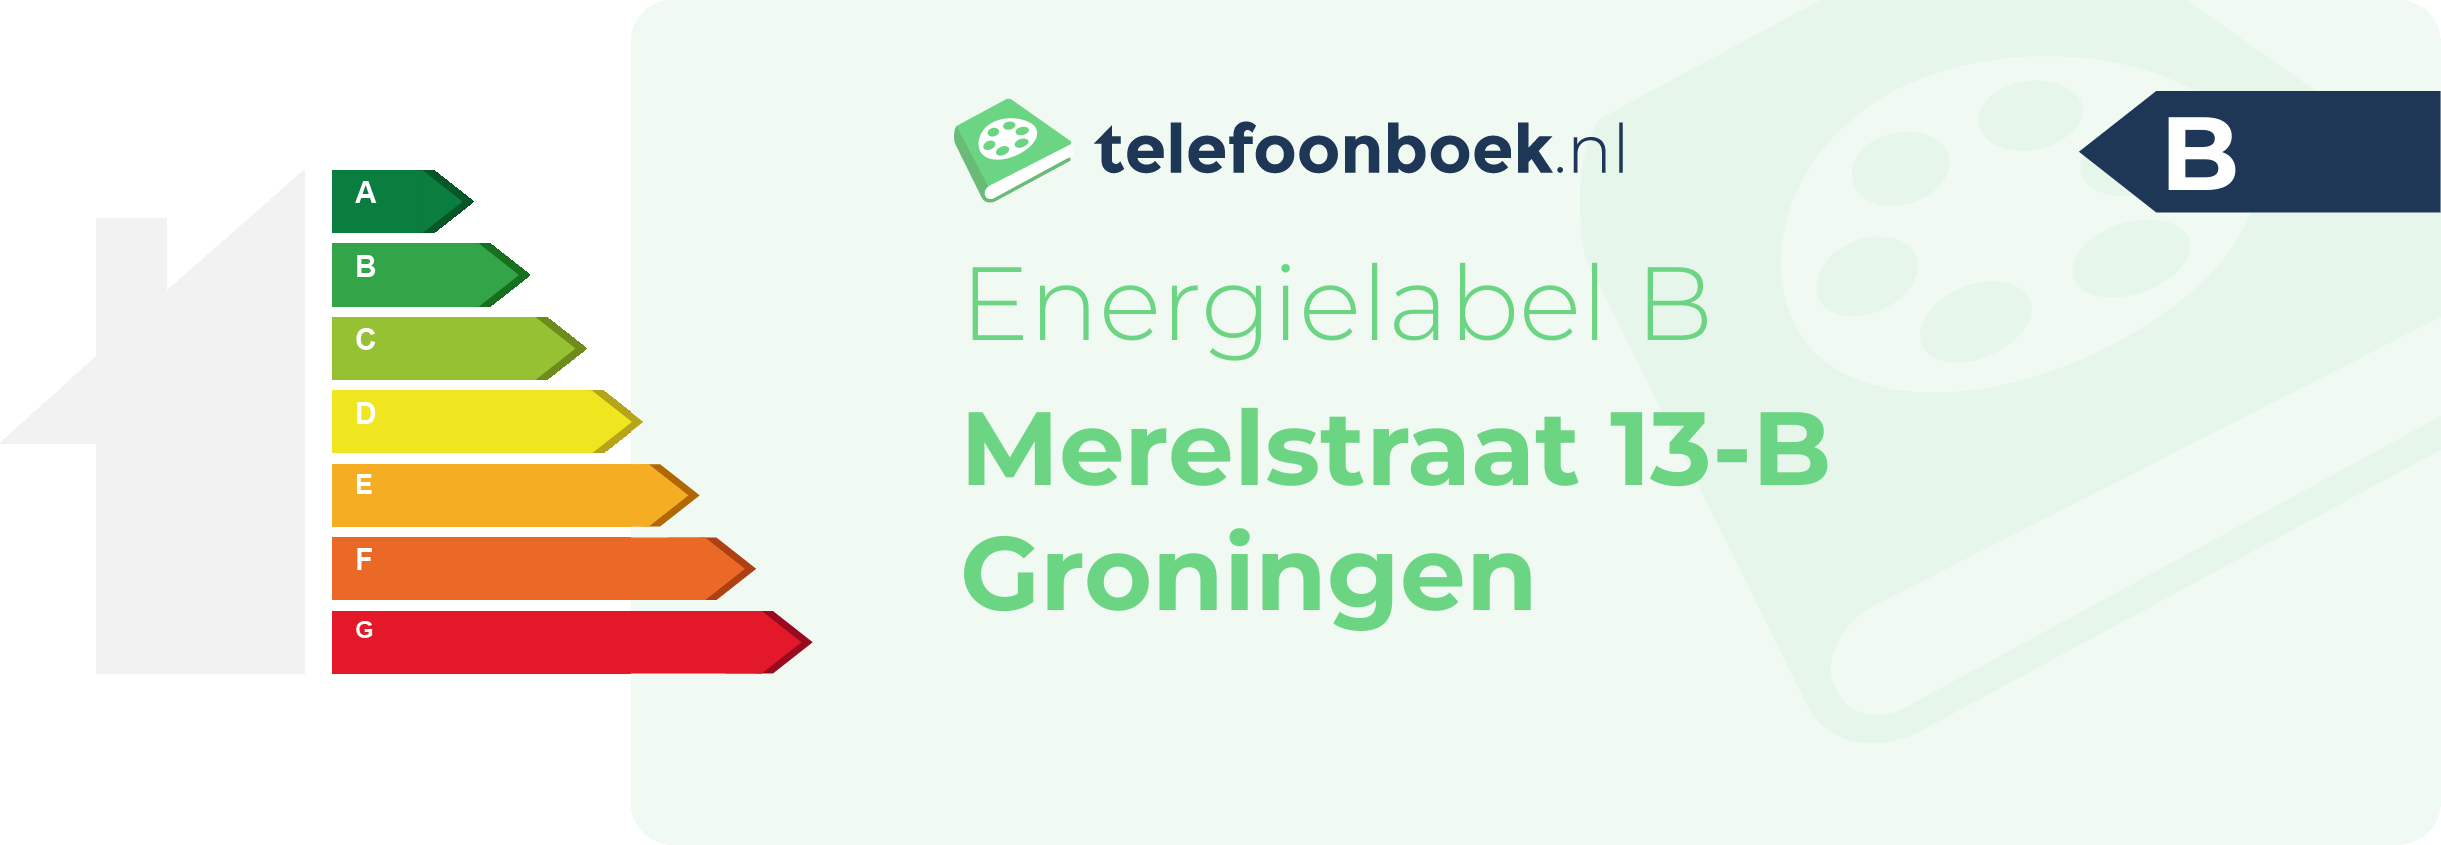 Energielabel Merelstraat 13-B Groningen